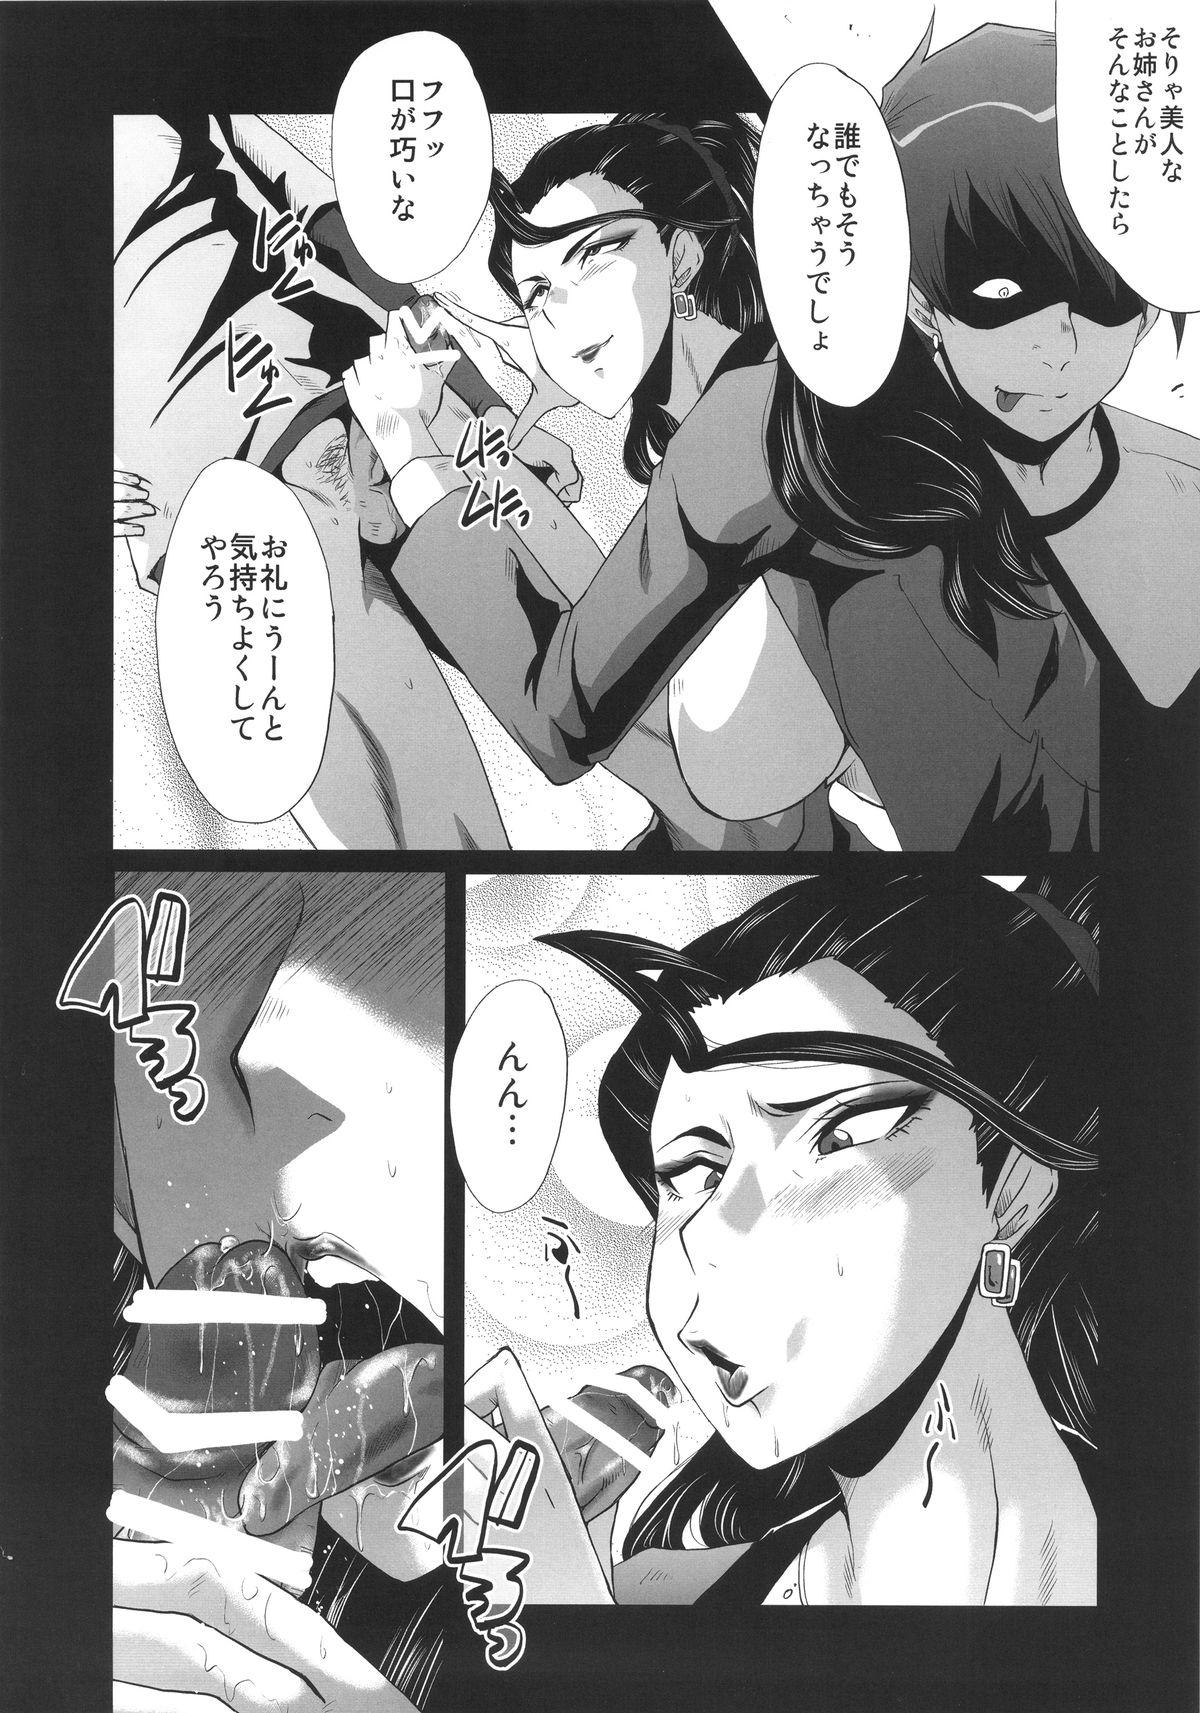 Game Urabambi 52 Injuku no Kyouen - The idolmaster Sex - Page 8